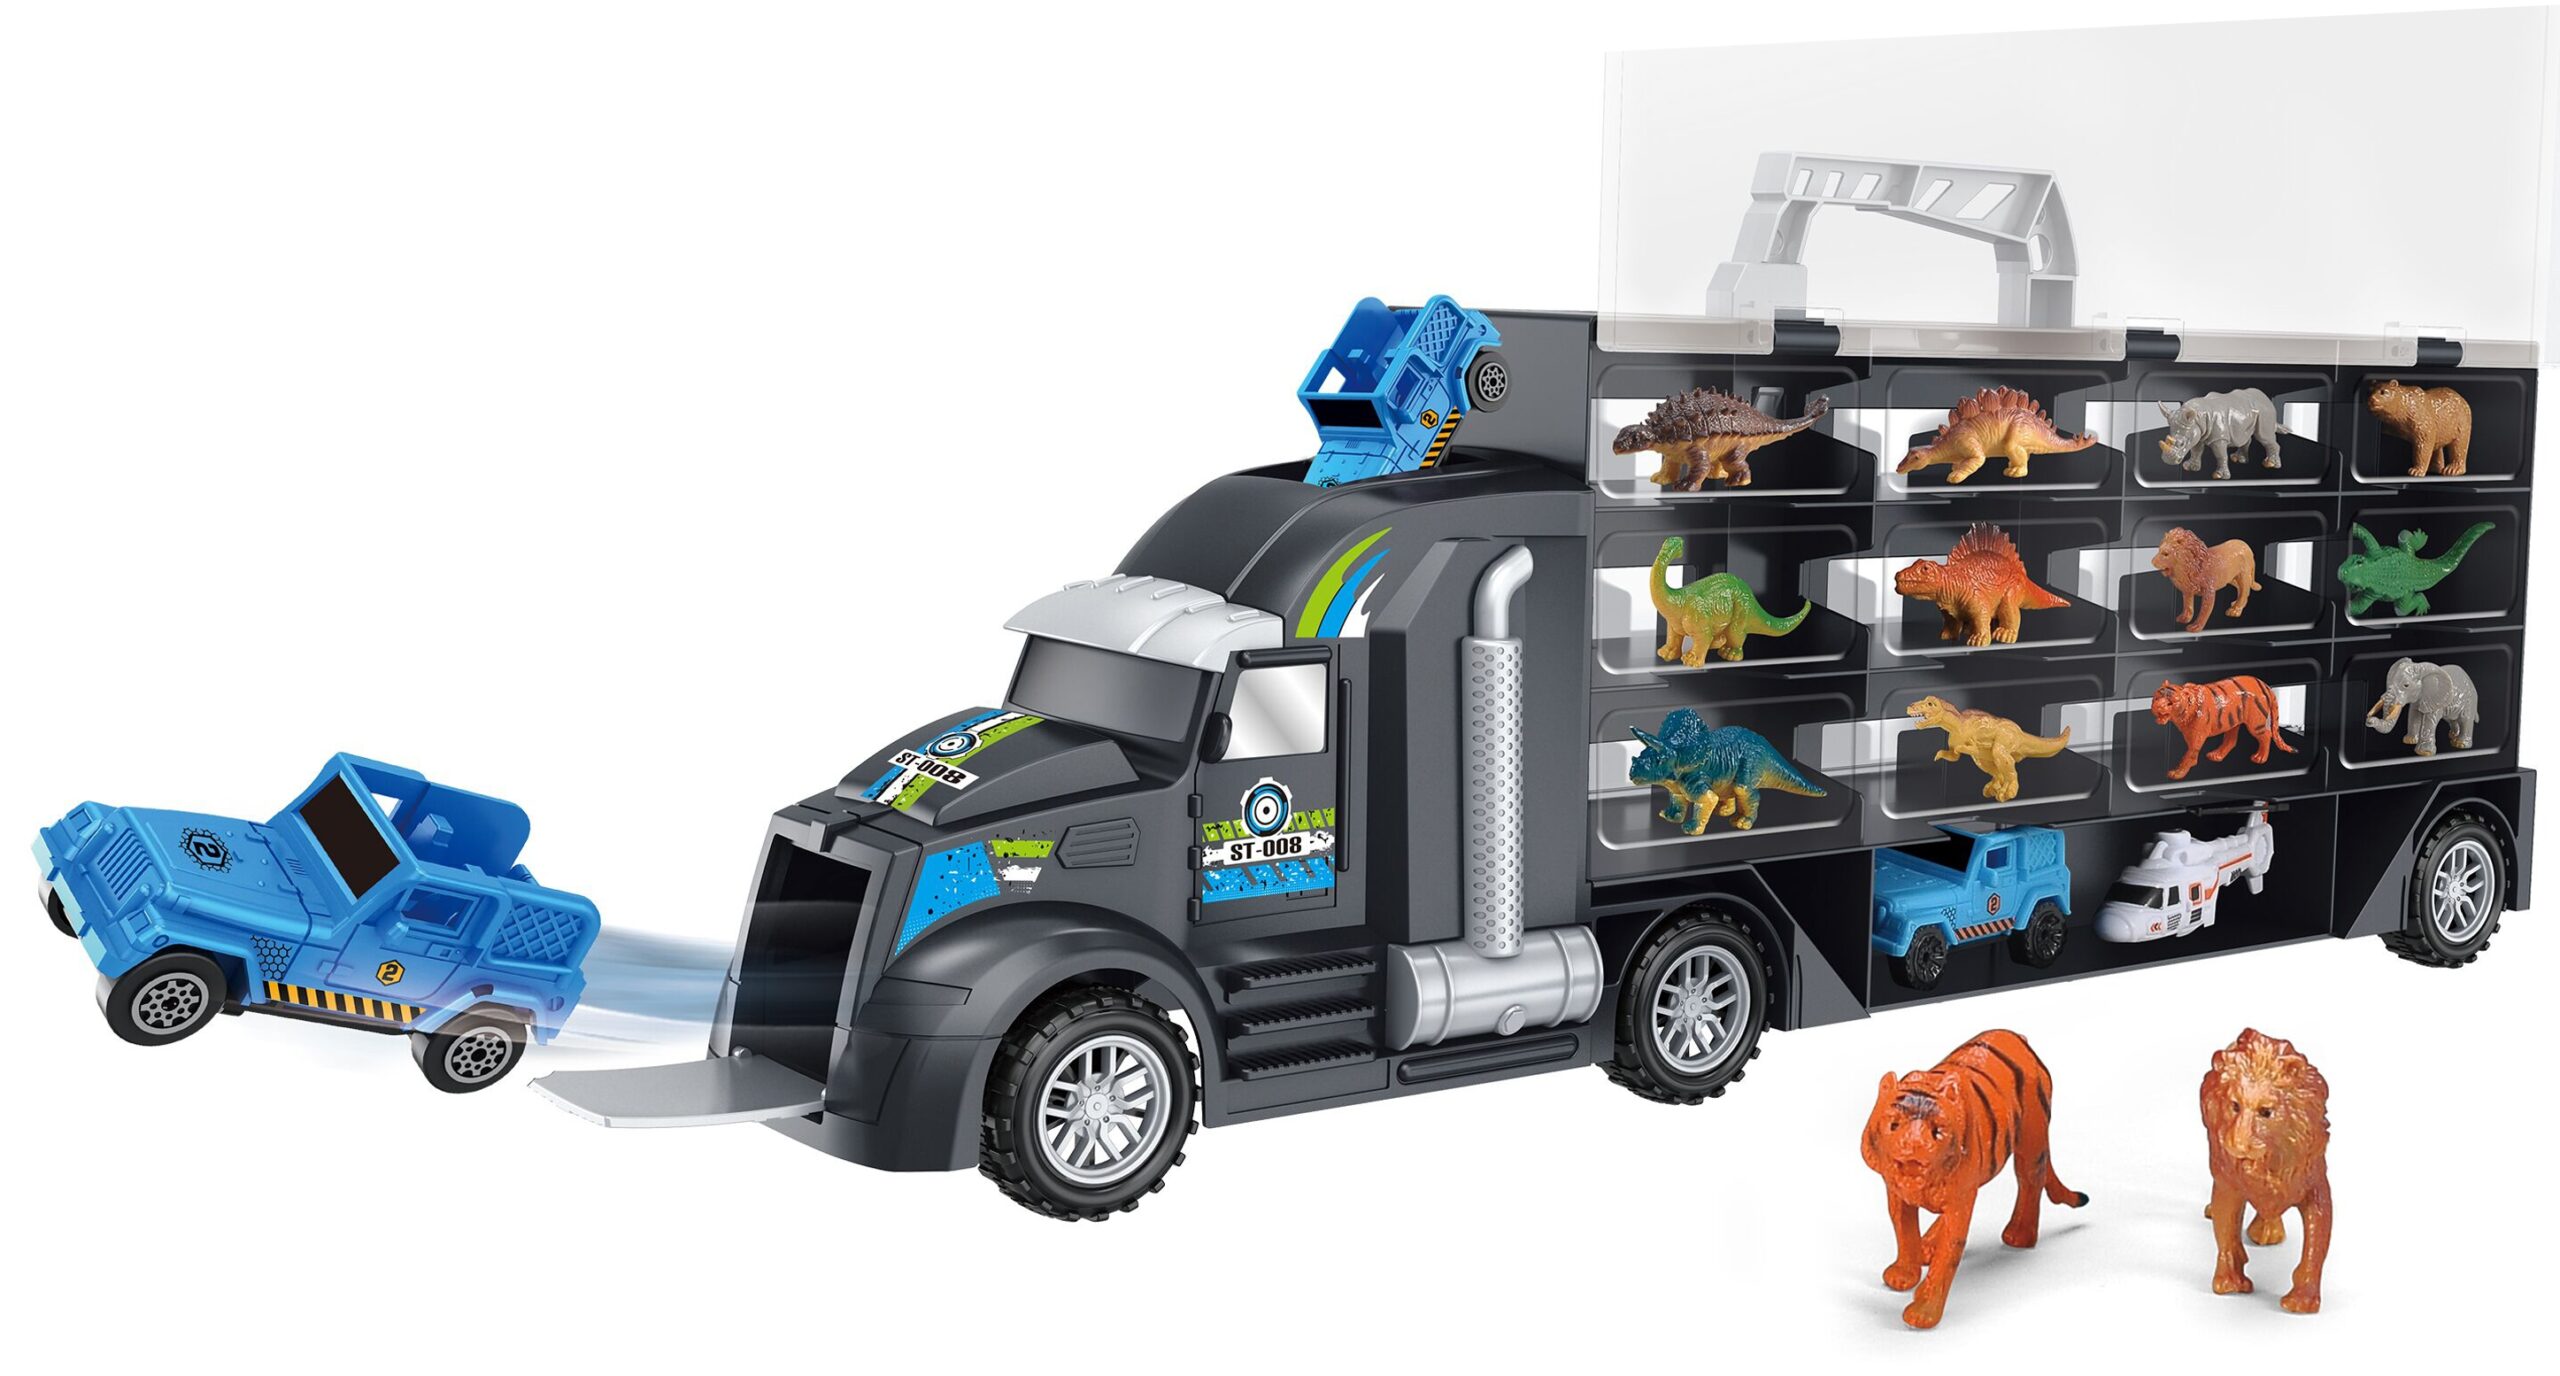 Samochód transporter dinozaury ciężarówka, zabawka dla dzieci, Woopie